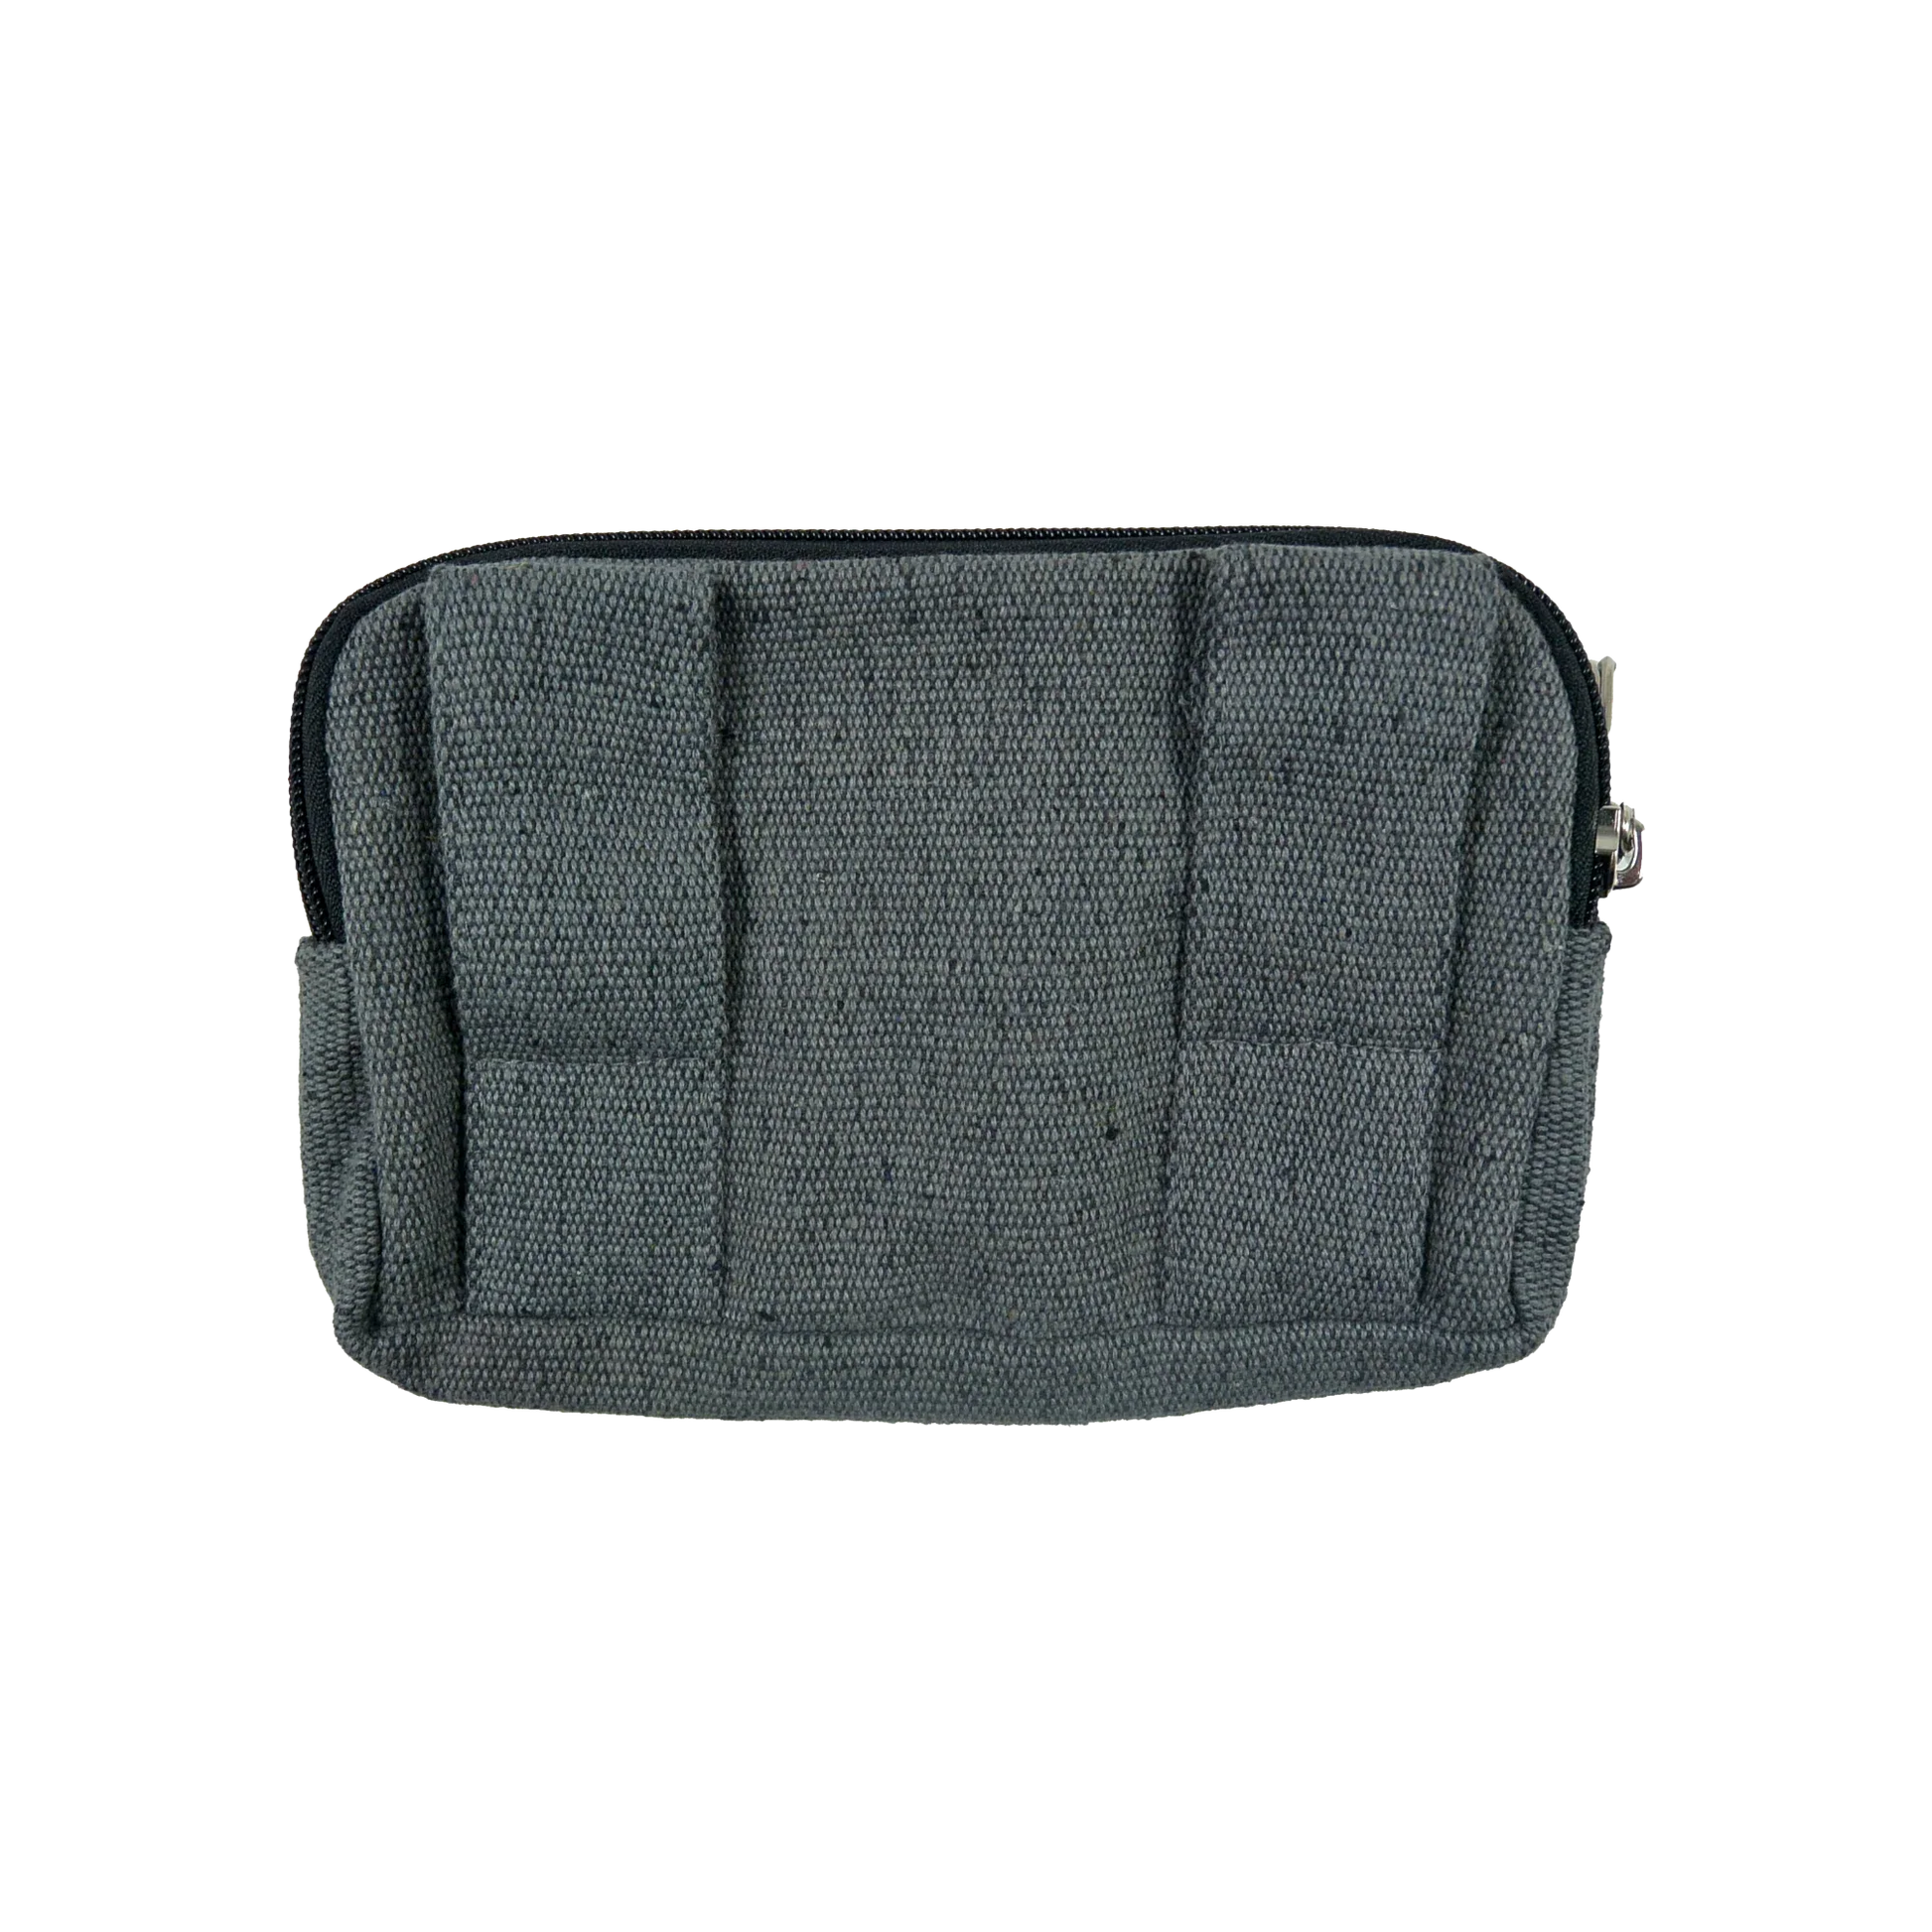 Beuteltsche aus Canvas grau. Die Tasche besitzt Reisverschlussfächer und ein Einsteckfach vorne und kann mit zwei Gürtelschlaufen auf der Rückseite an jeden Gürtel angebracht werden.